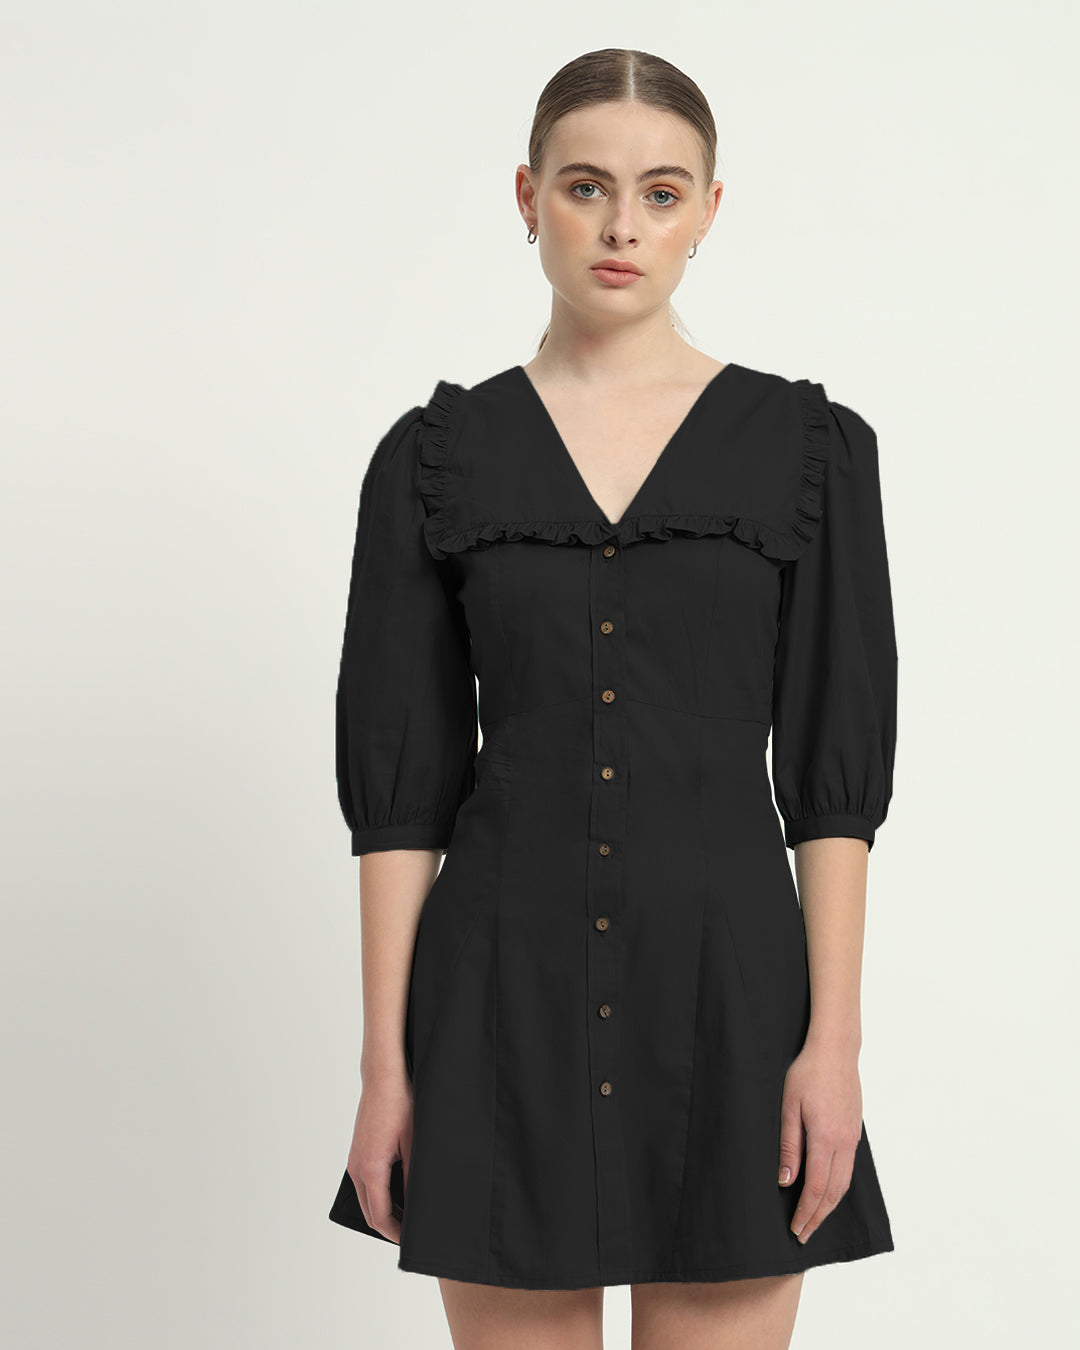 The Noir Isabela Cotton Dress